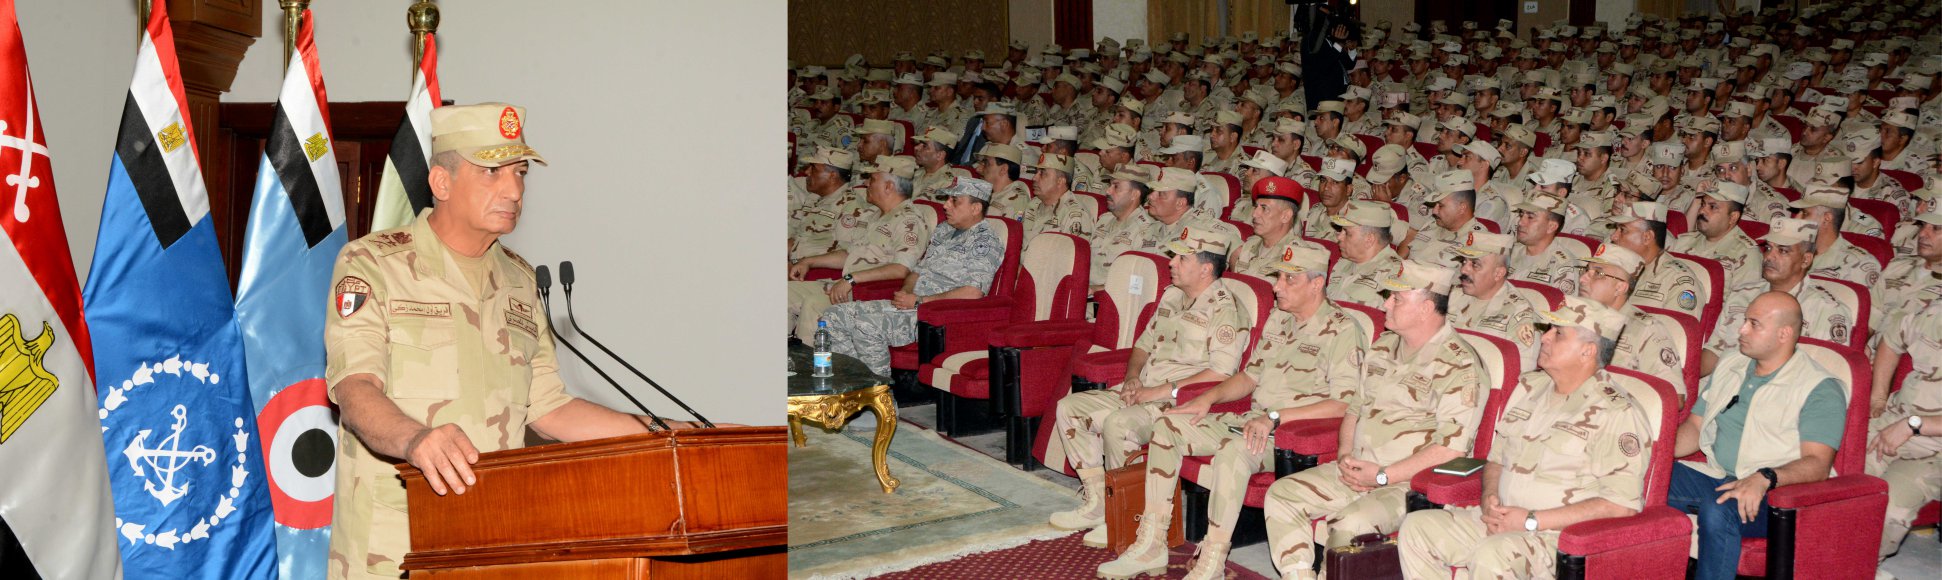   وزير الدفاع يلتقي ضباط وصف وصناع وجنود المنطقة المركزية العسكرية